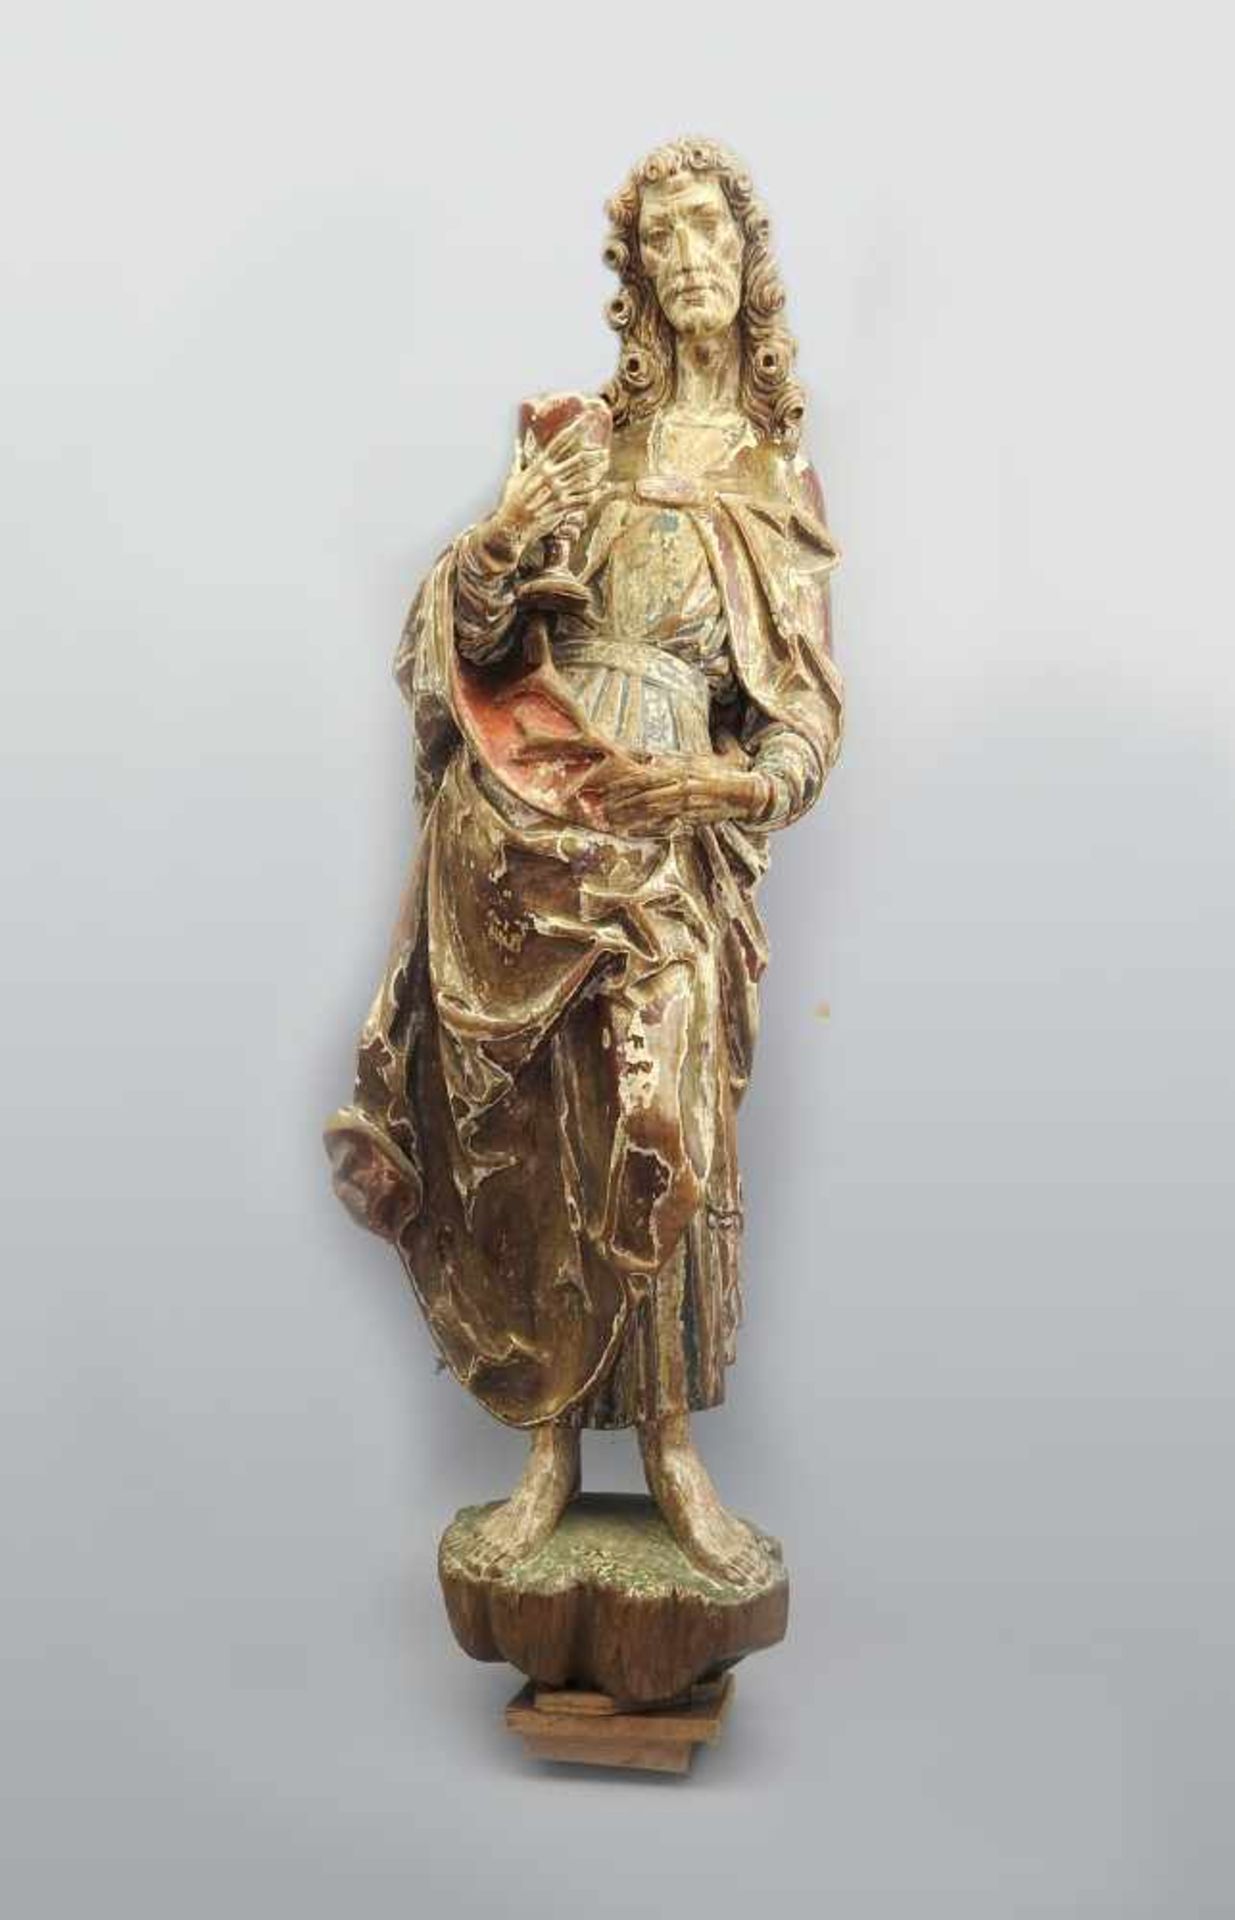 HeiligenfigurGoldene Fassung. Altersbedingte Erhaltung, Wurmfraß. Süddeutschland, um 1700. H x B x T